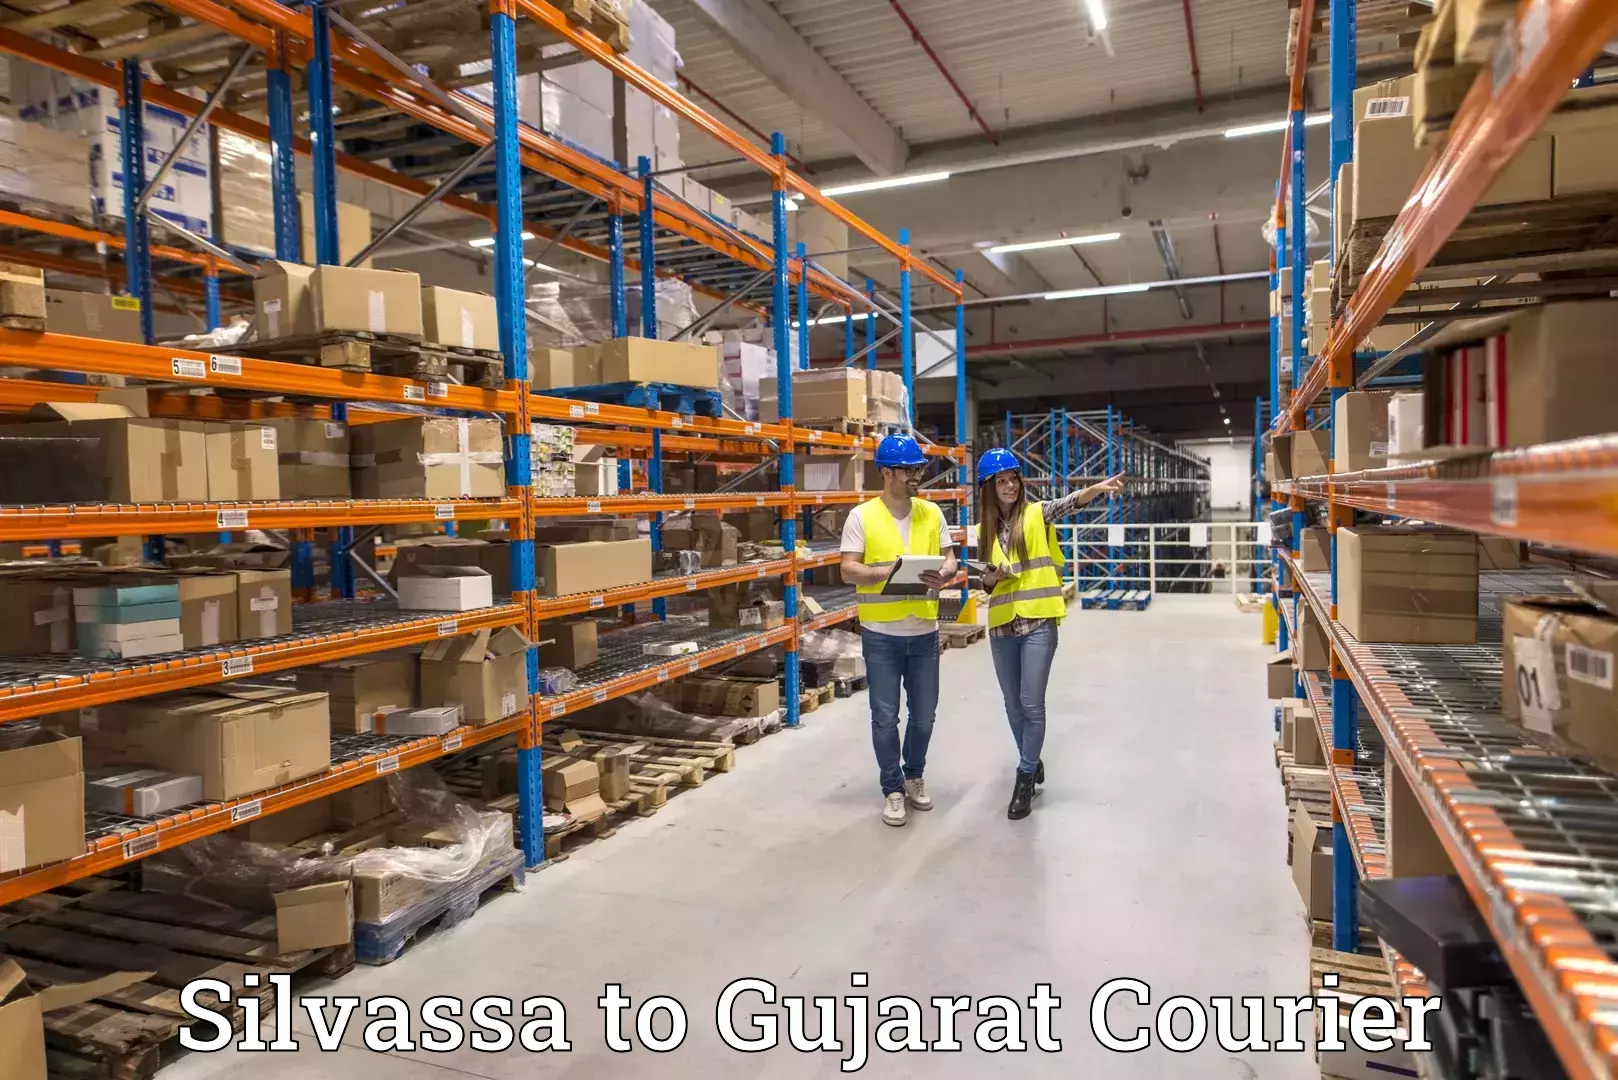 Premium courier solutions Silvassa to Surat